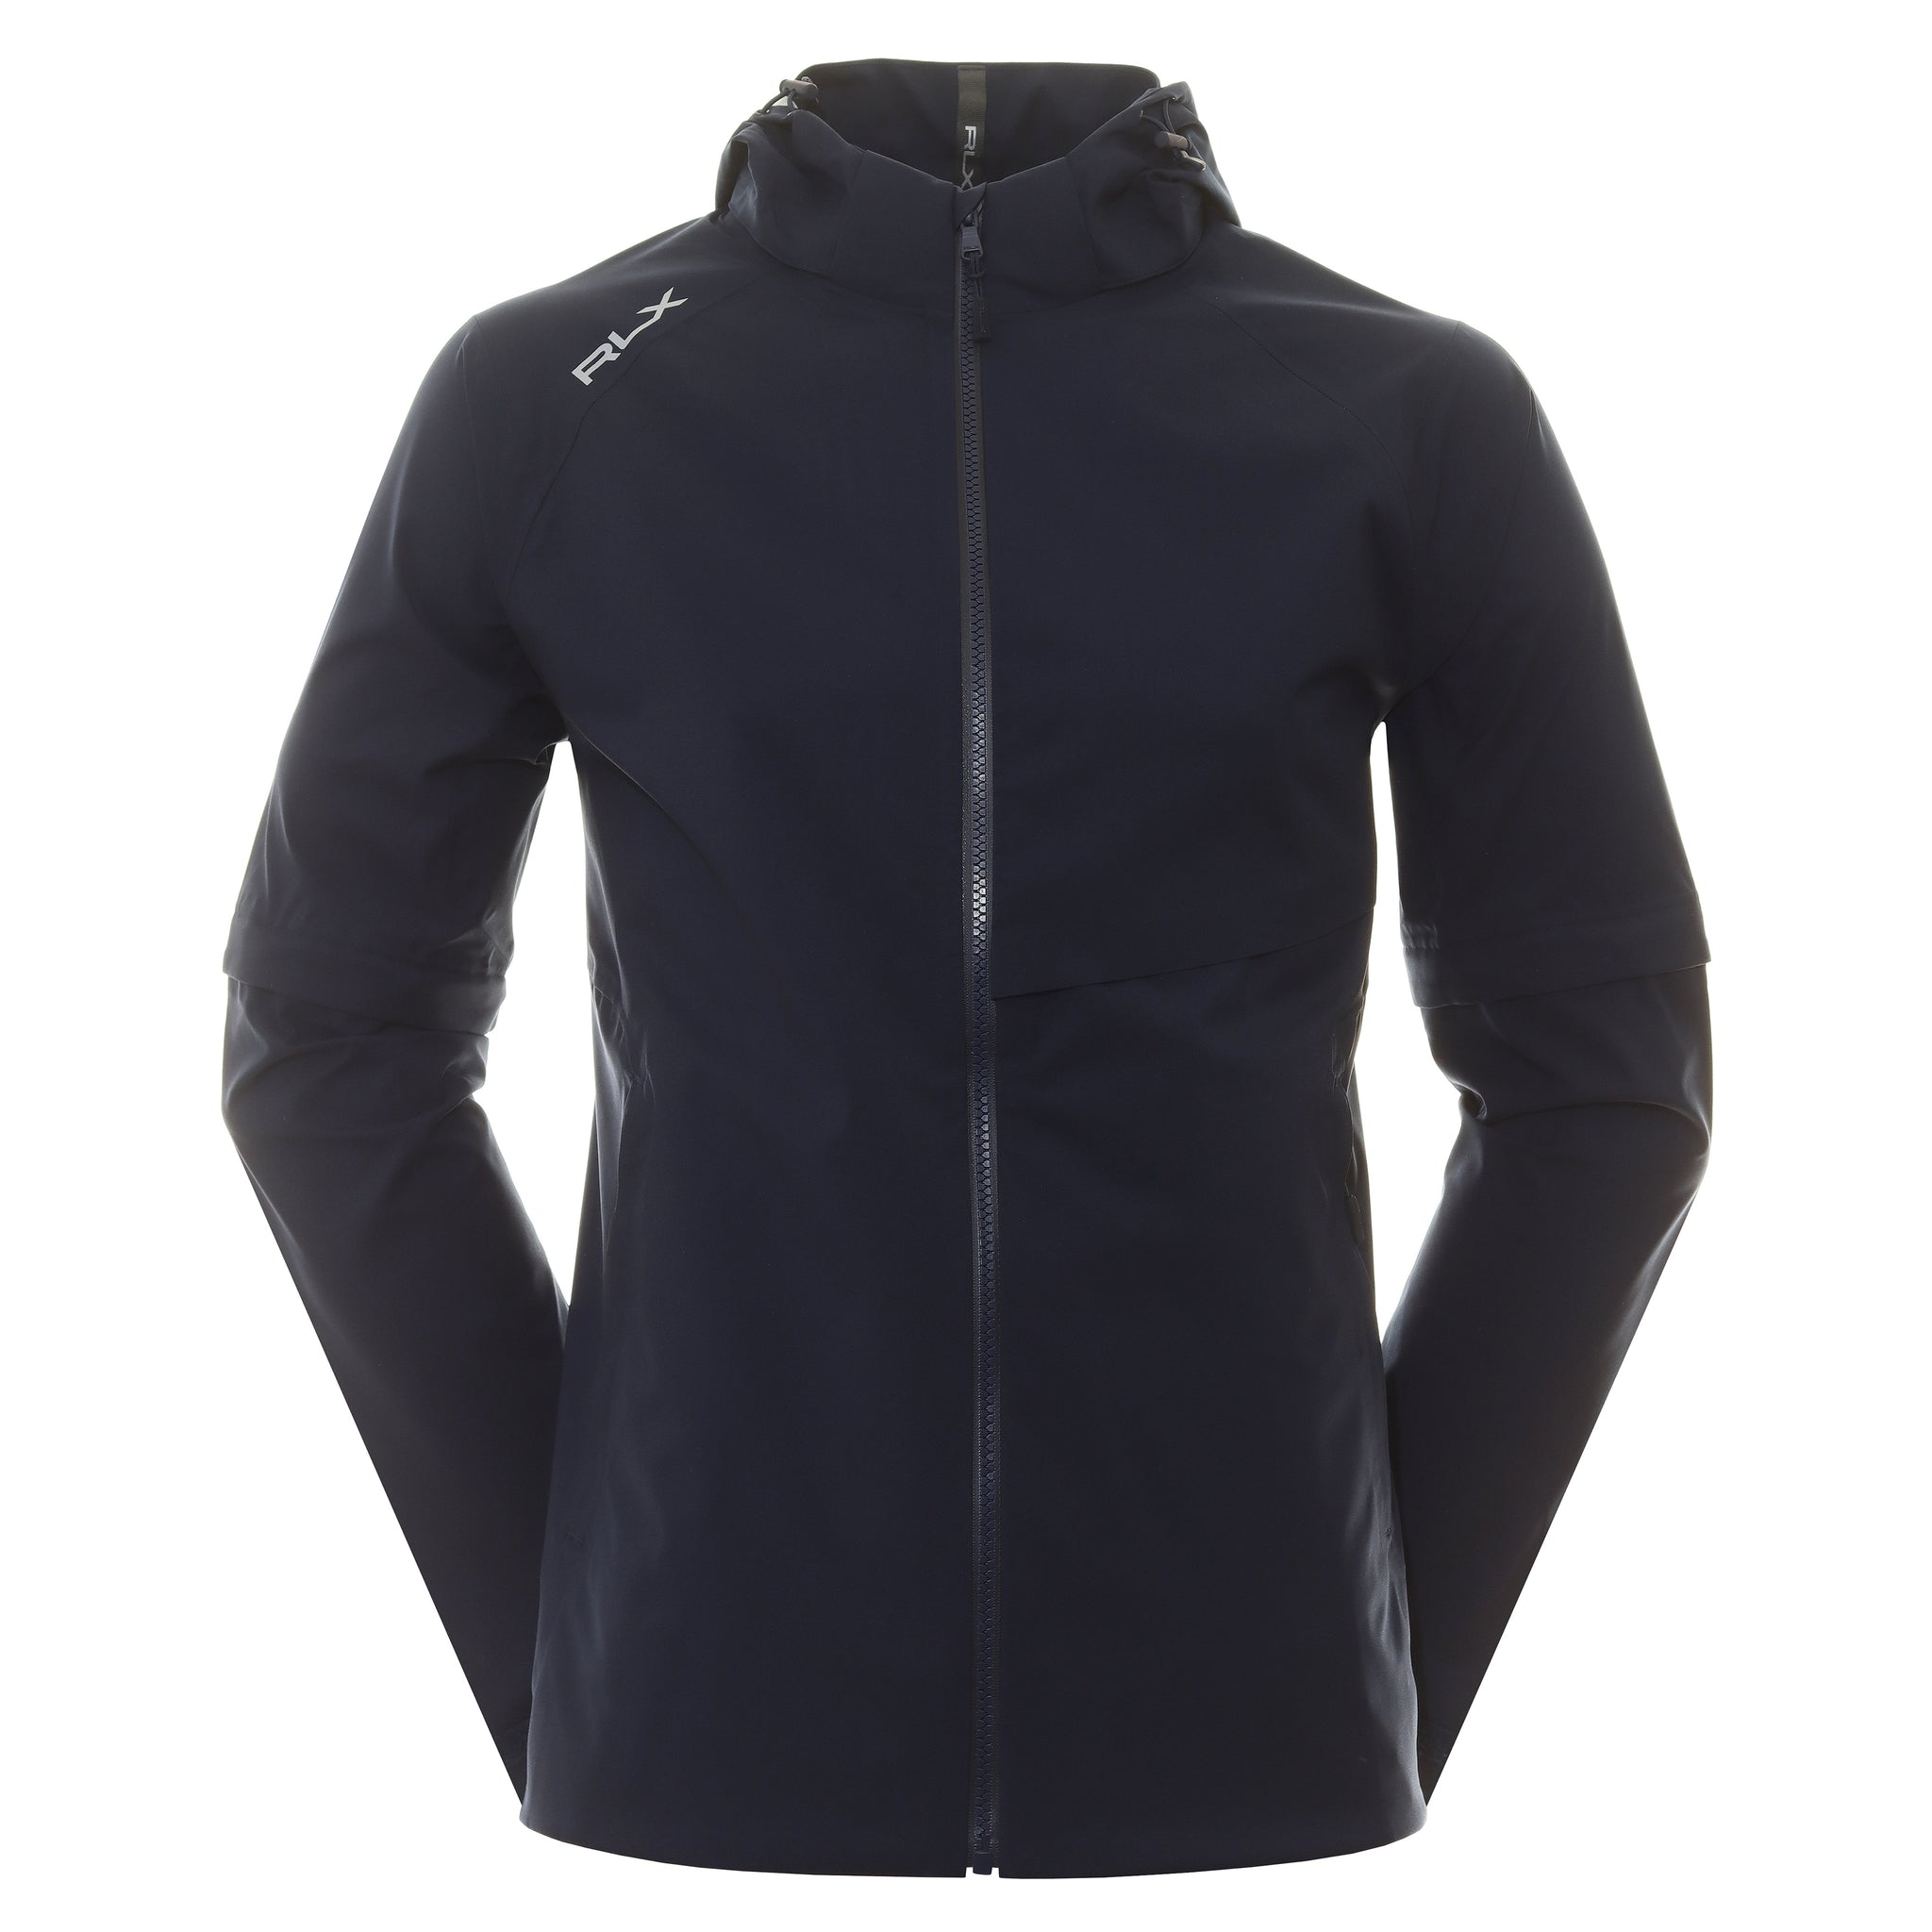 rlx-ralph-lauren-deluge-jacket-785915602-refined-navy-002